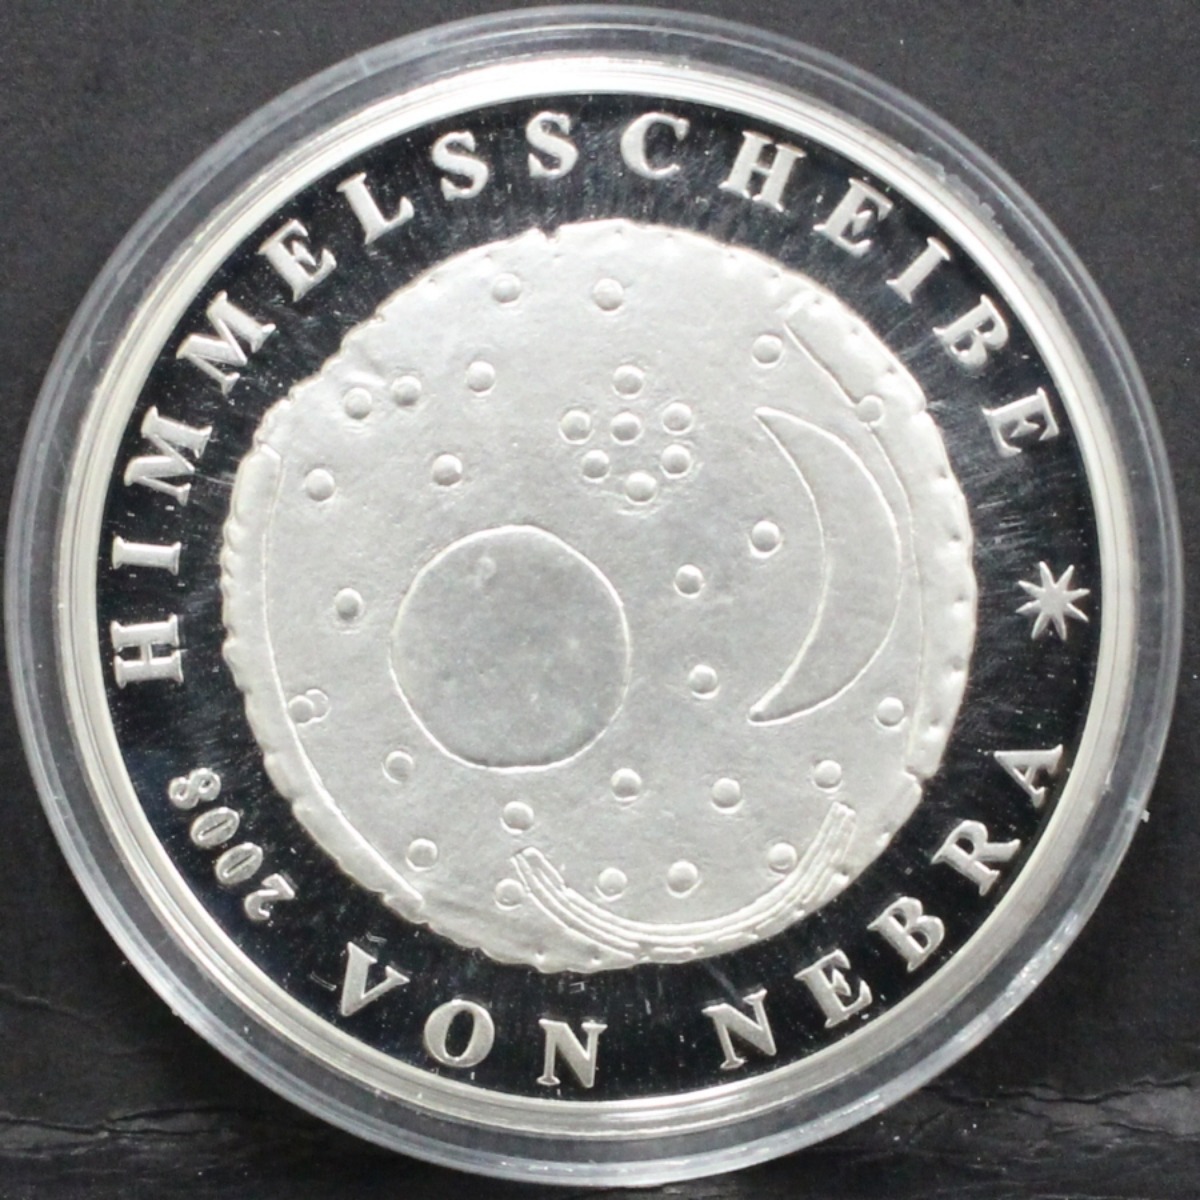 독일 2008년 네브라 하늘원반 은메달